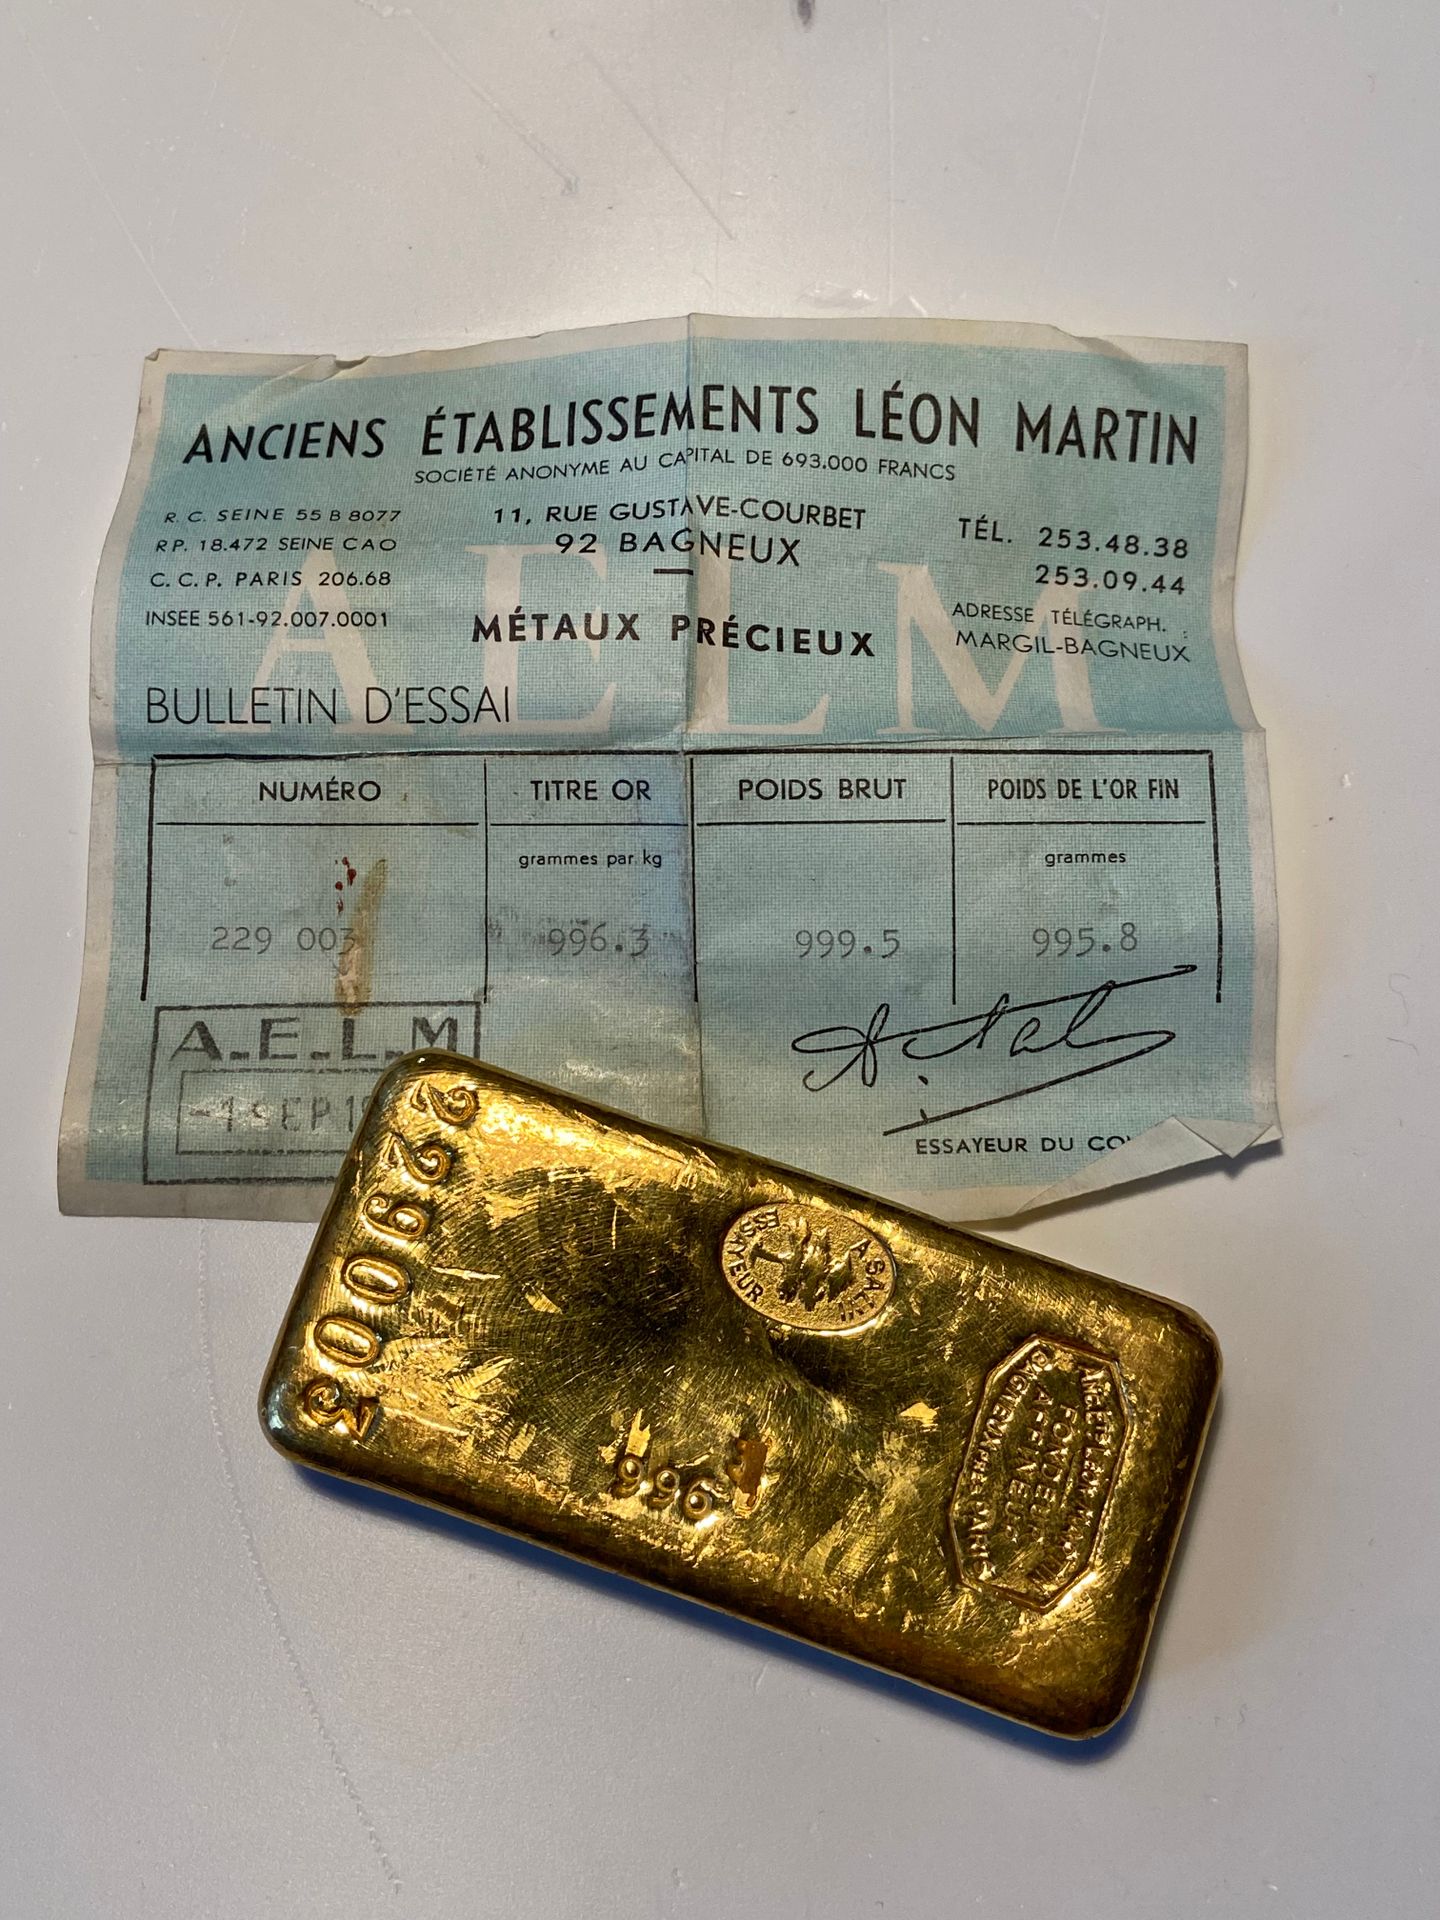 Null 
Un lingote de oro con el número 229003, peso bruto: 999,5 gr.
Certificado &hellip;